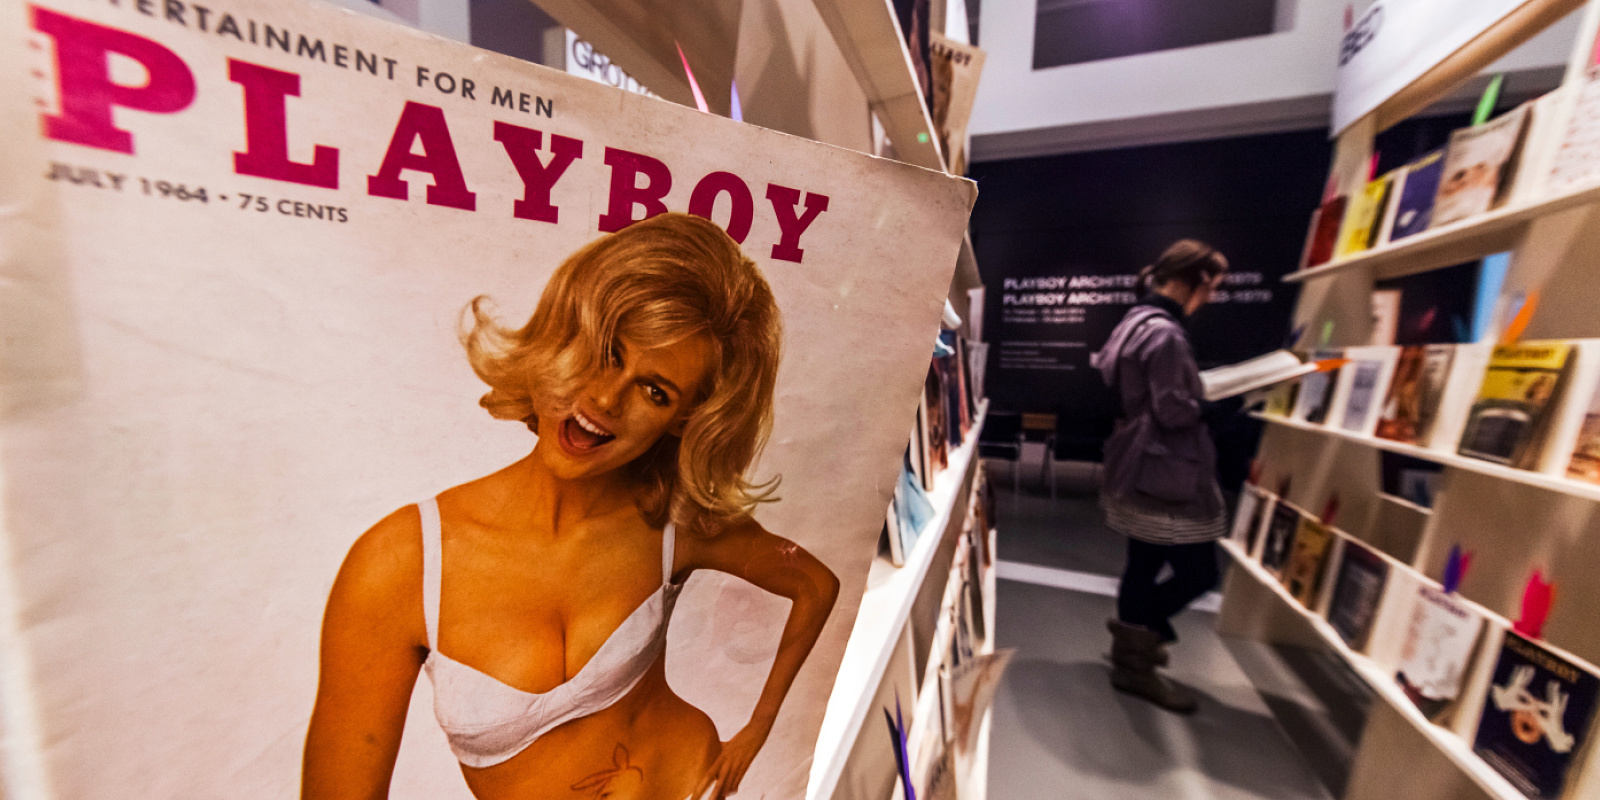 Exposición «Playboy Architektur», Museo Alemán de Arquitectura de Frankfurt